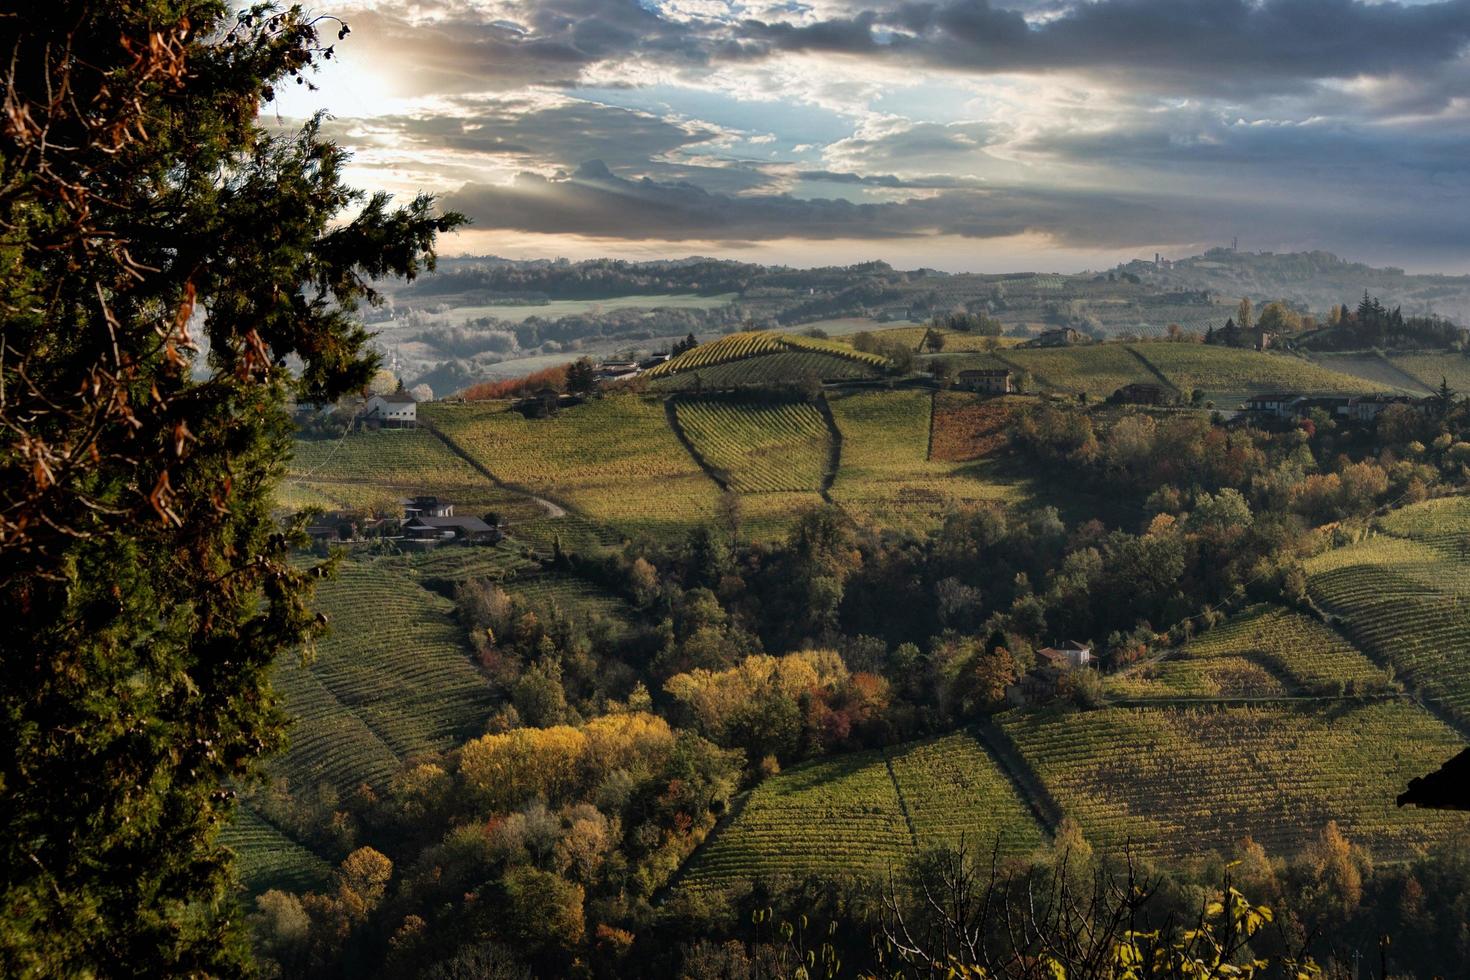 herfst landschappen in de piemontese langhe in de buurt serralunga d'alba, met de helder kleuren van de piemontese herfst foto